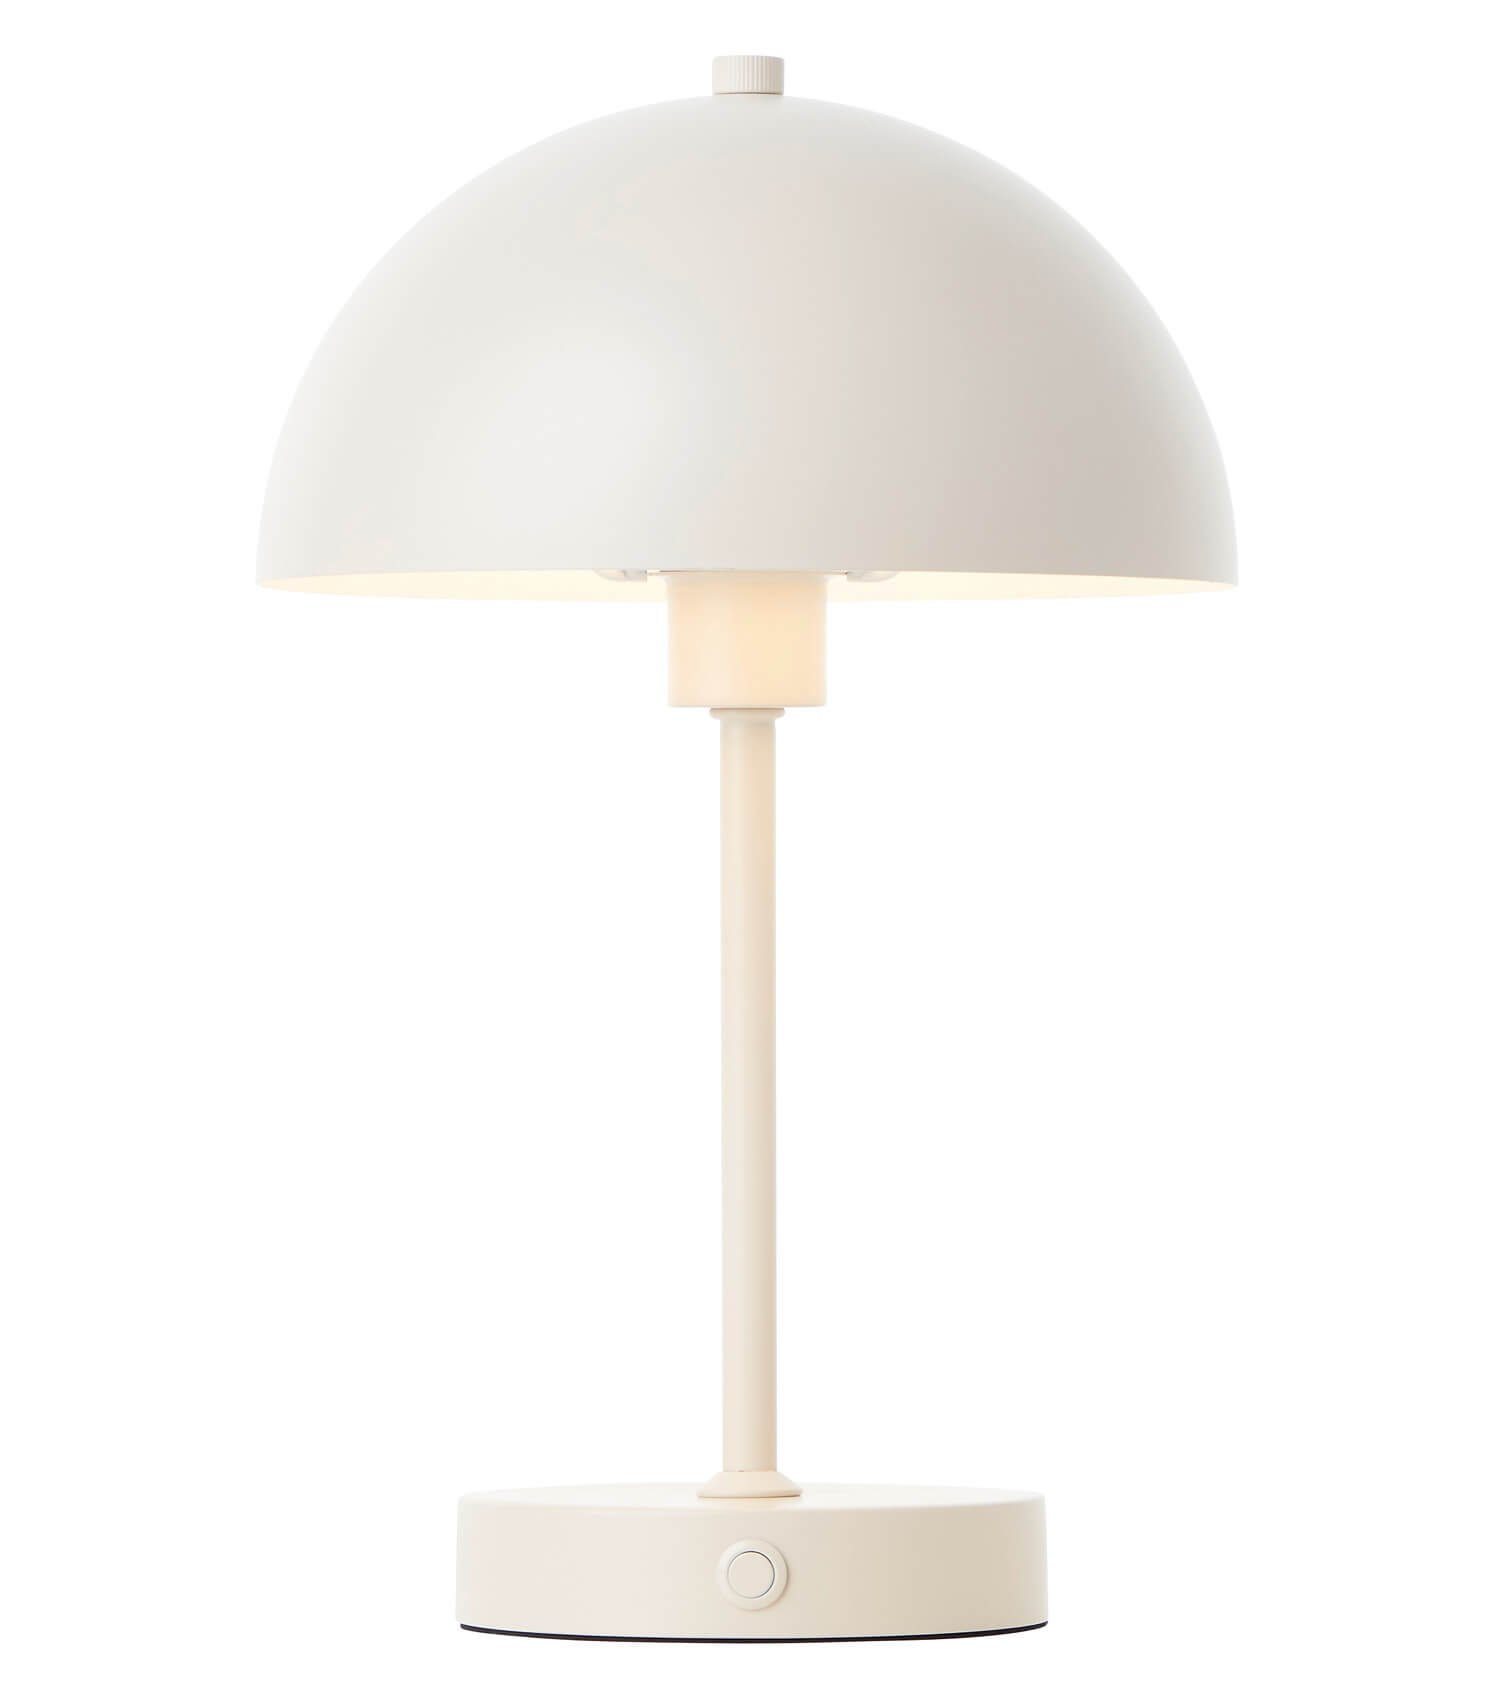 mokebo Tischleuchte dimmbare Der kabellos, aufladbar, Warmweiß, Leuchtturm, LED-Lampe Tischlampe Akku Beige mit vintage